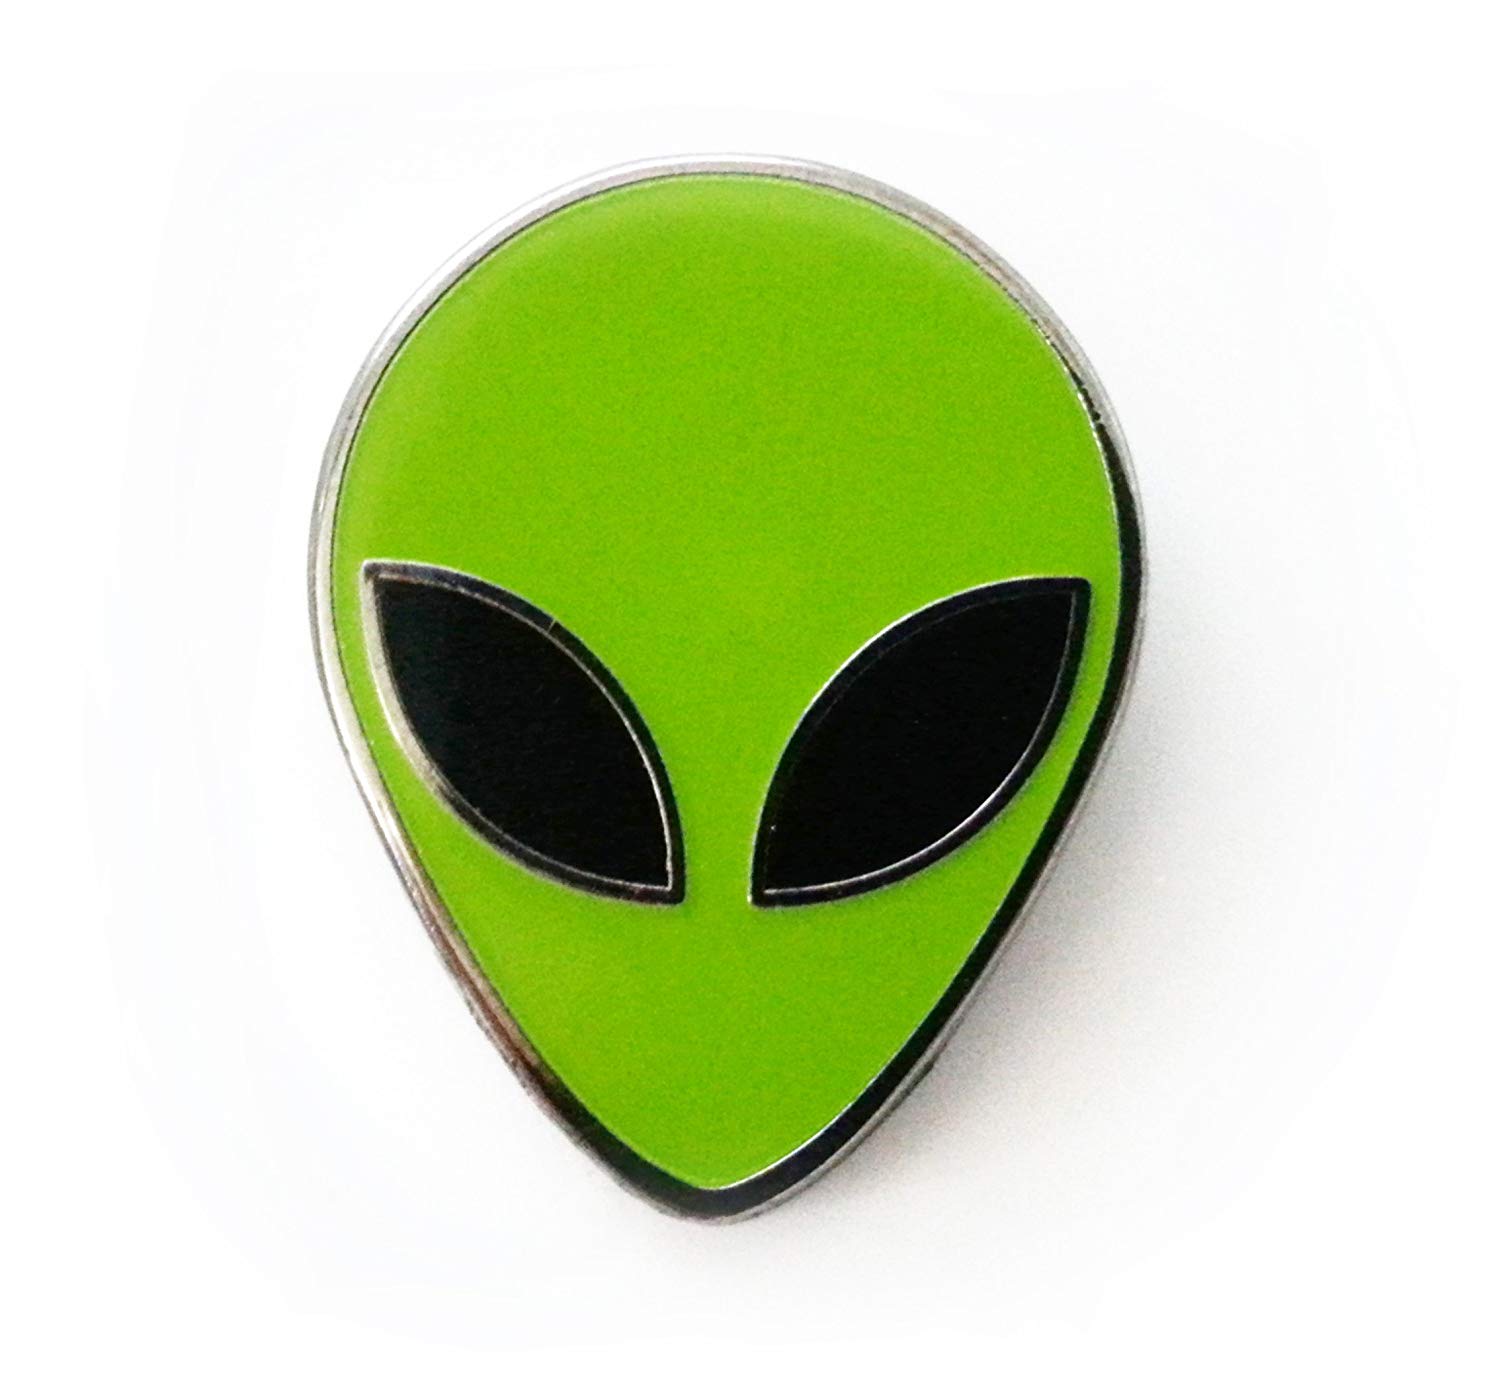 Green Alien Logo - Amazon.com: Pinsanity Green Alien Head Enamel Lapel Pin: Jewelry